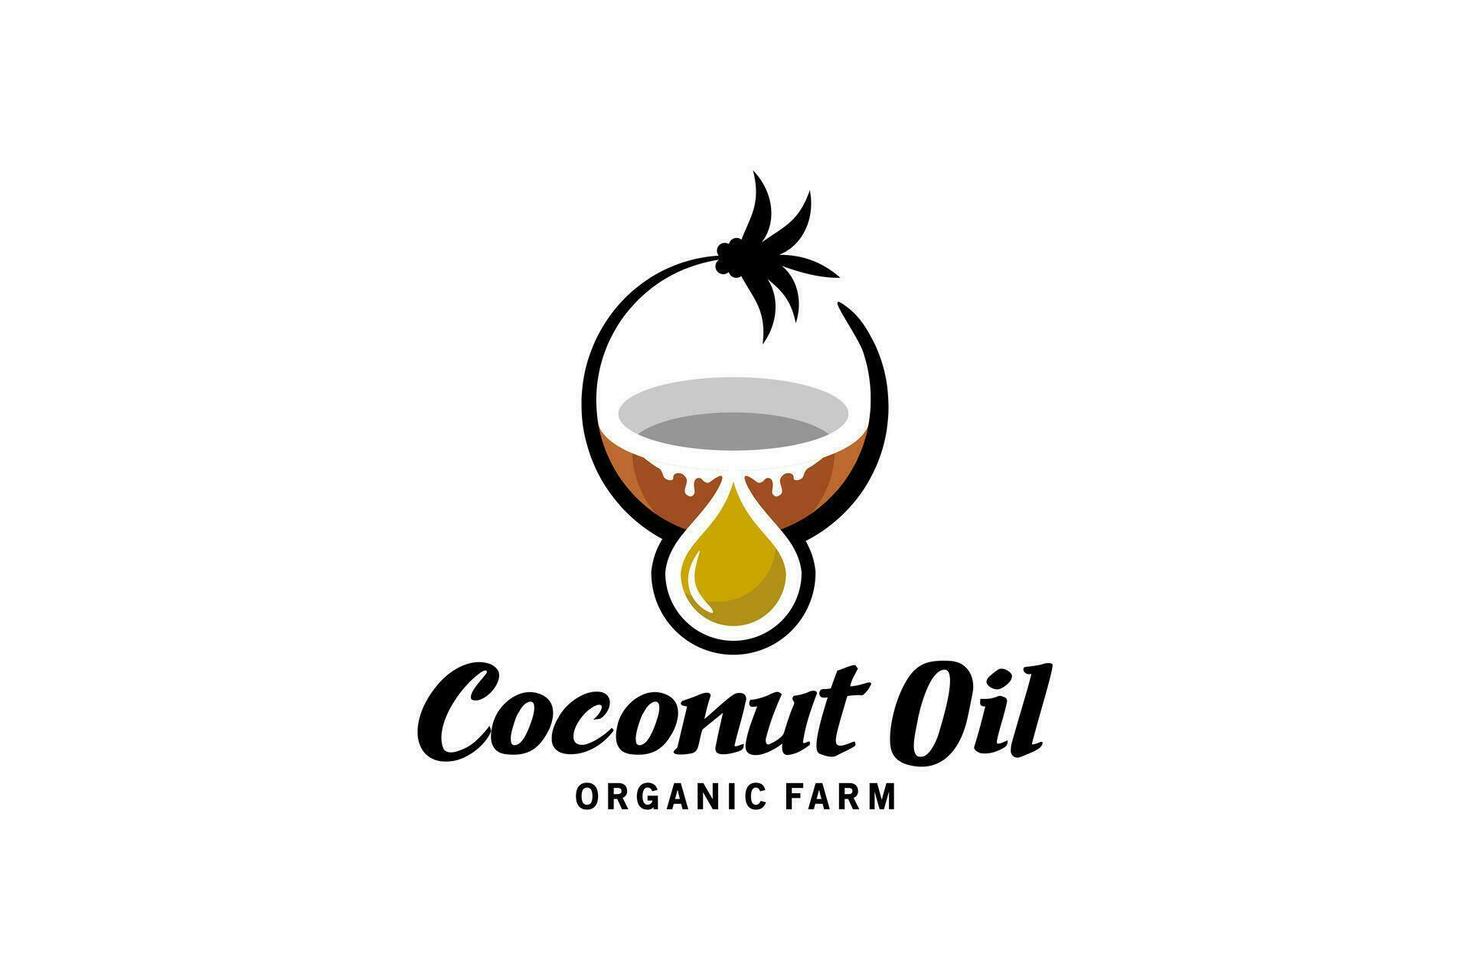 zuiver natuurlijk kokosnoot olie laten vallen logo vector illustratie ontwerp